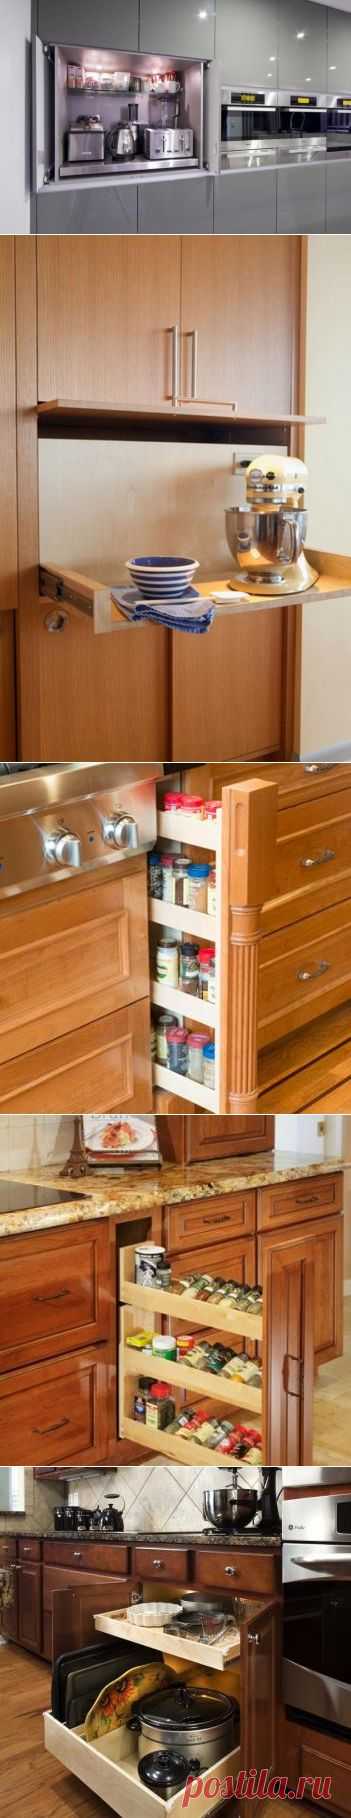 10 супер идей для организации хранения на кухне